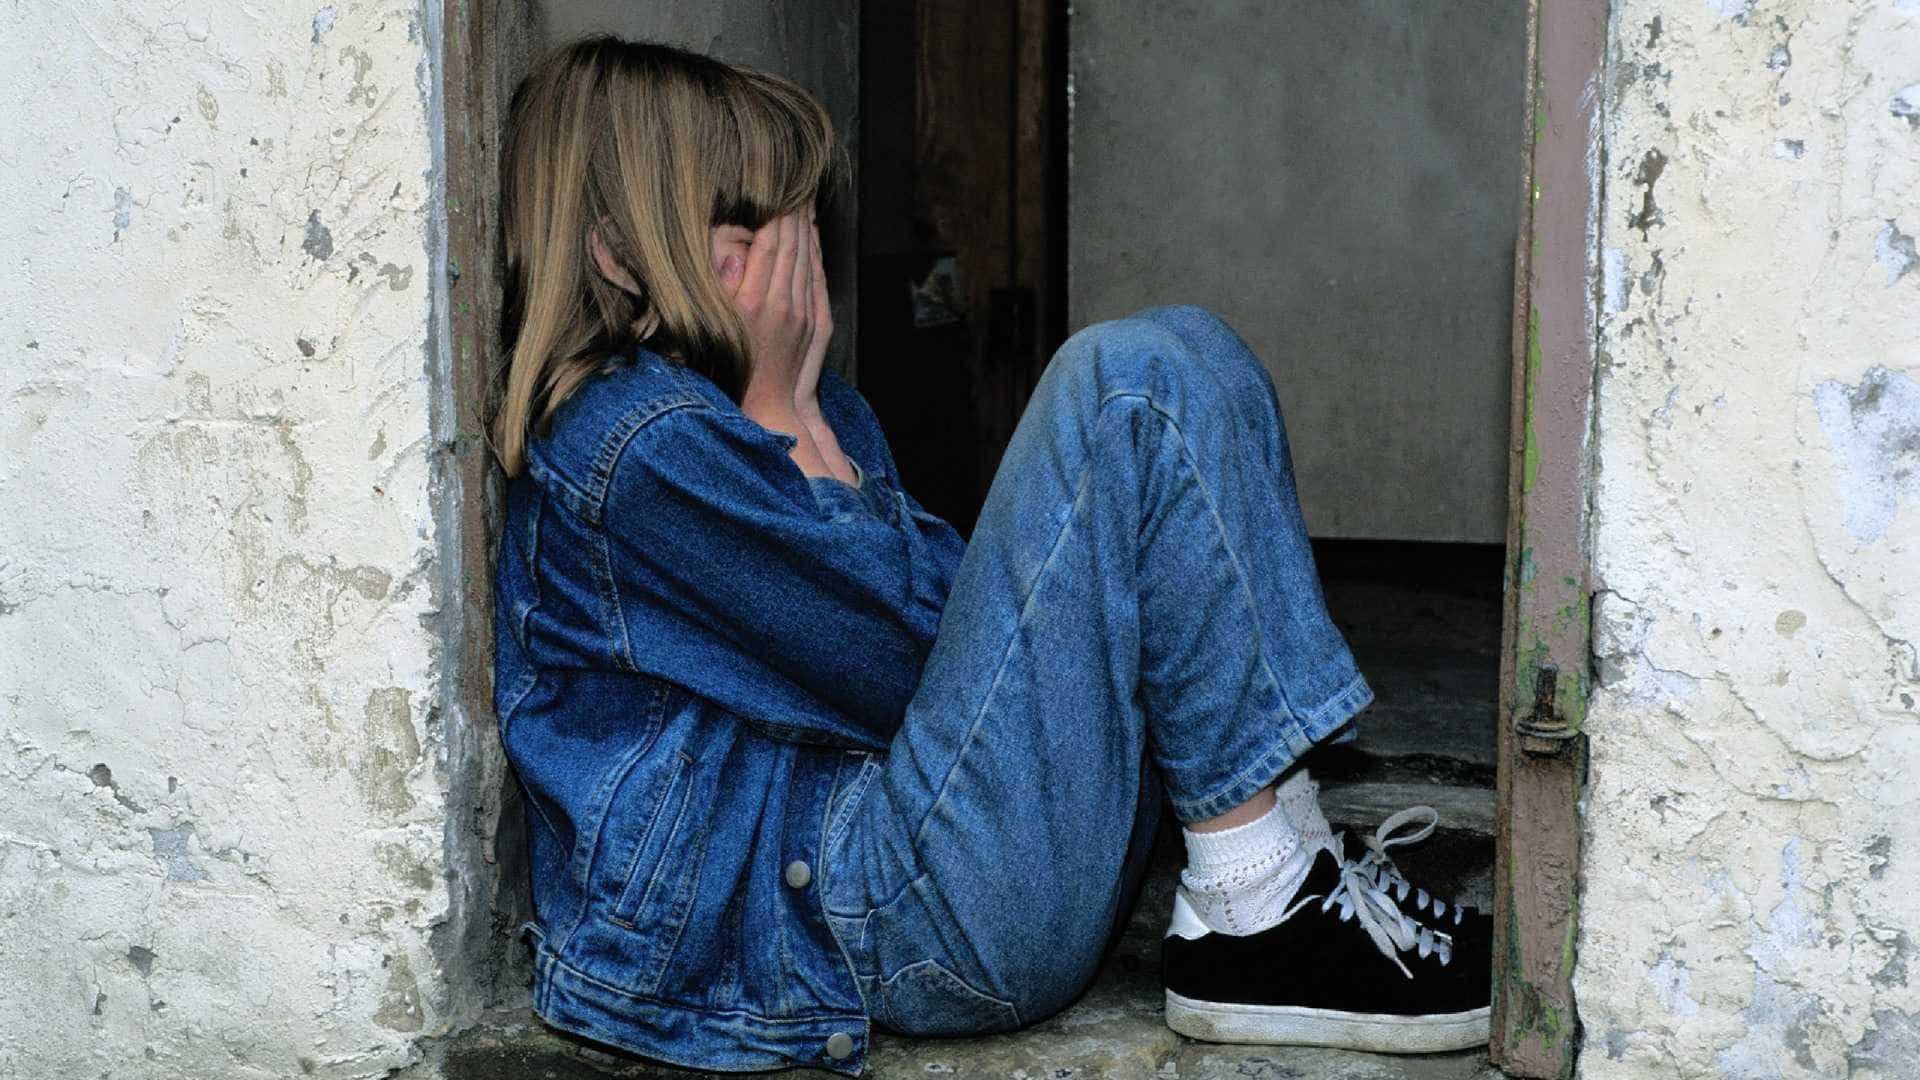 nvestigação sobre suposto abuso sexual de menina de 14 anos por pastor é retomada - Foto: Imagem ilustrativa/Pixabay